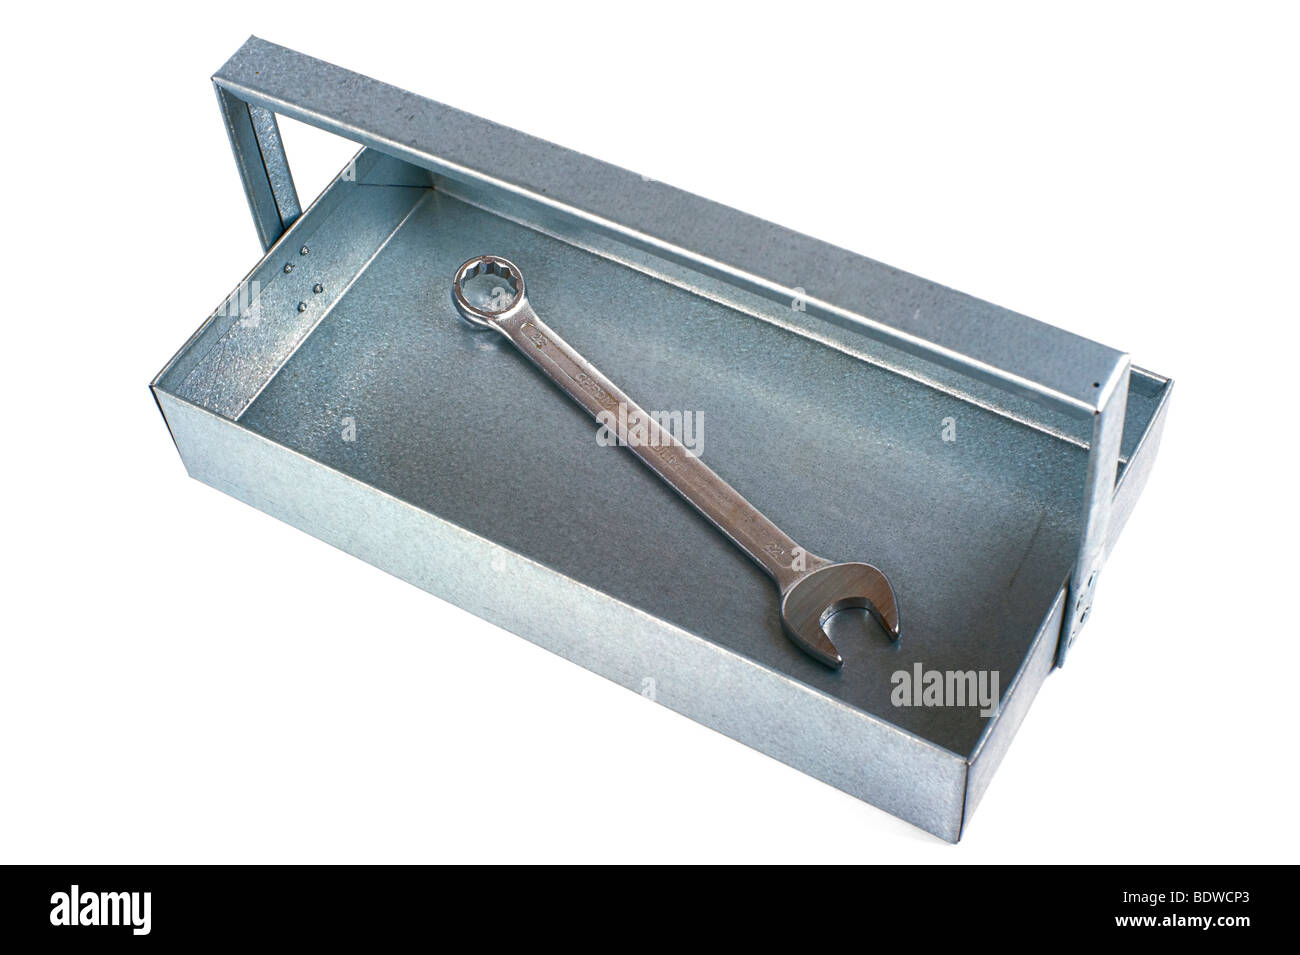 La boîte à outils à la main, travail de l'apprenti, feuilles de métal galvanisé avec une clé Banque D'Images